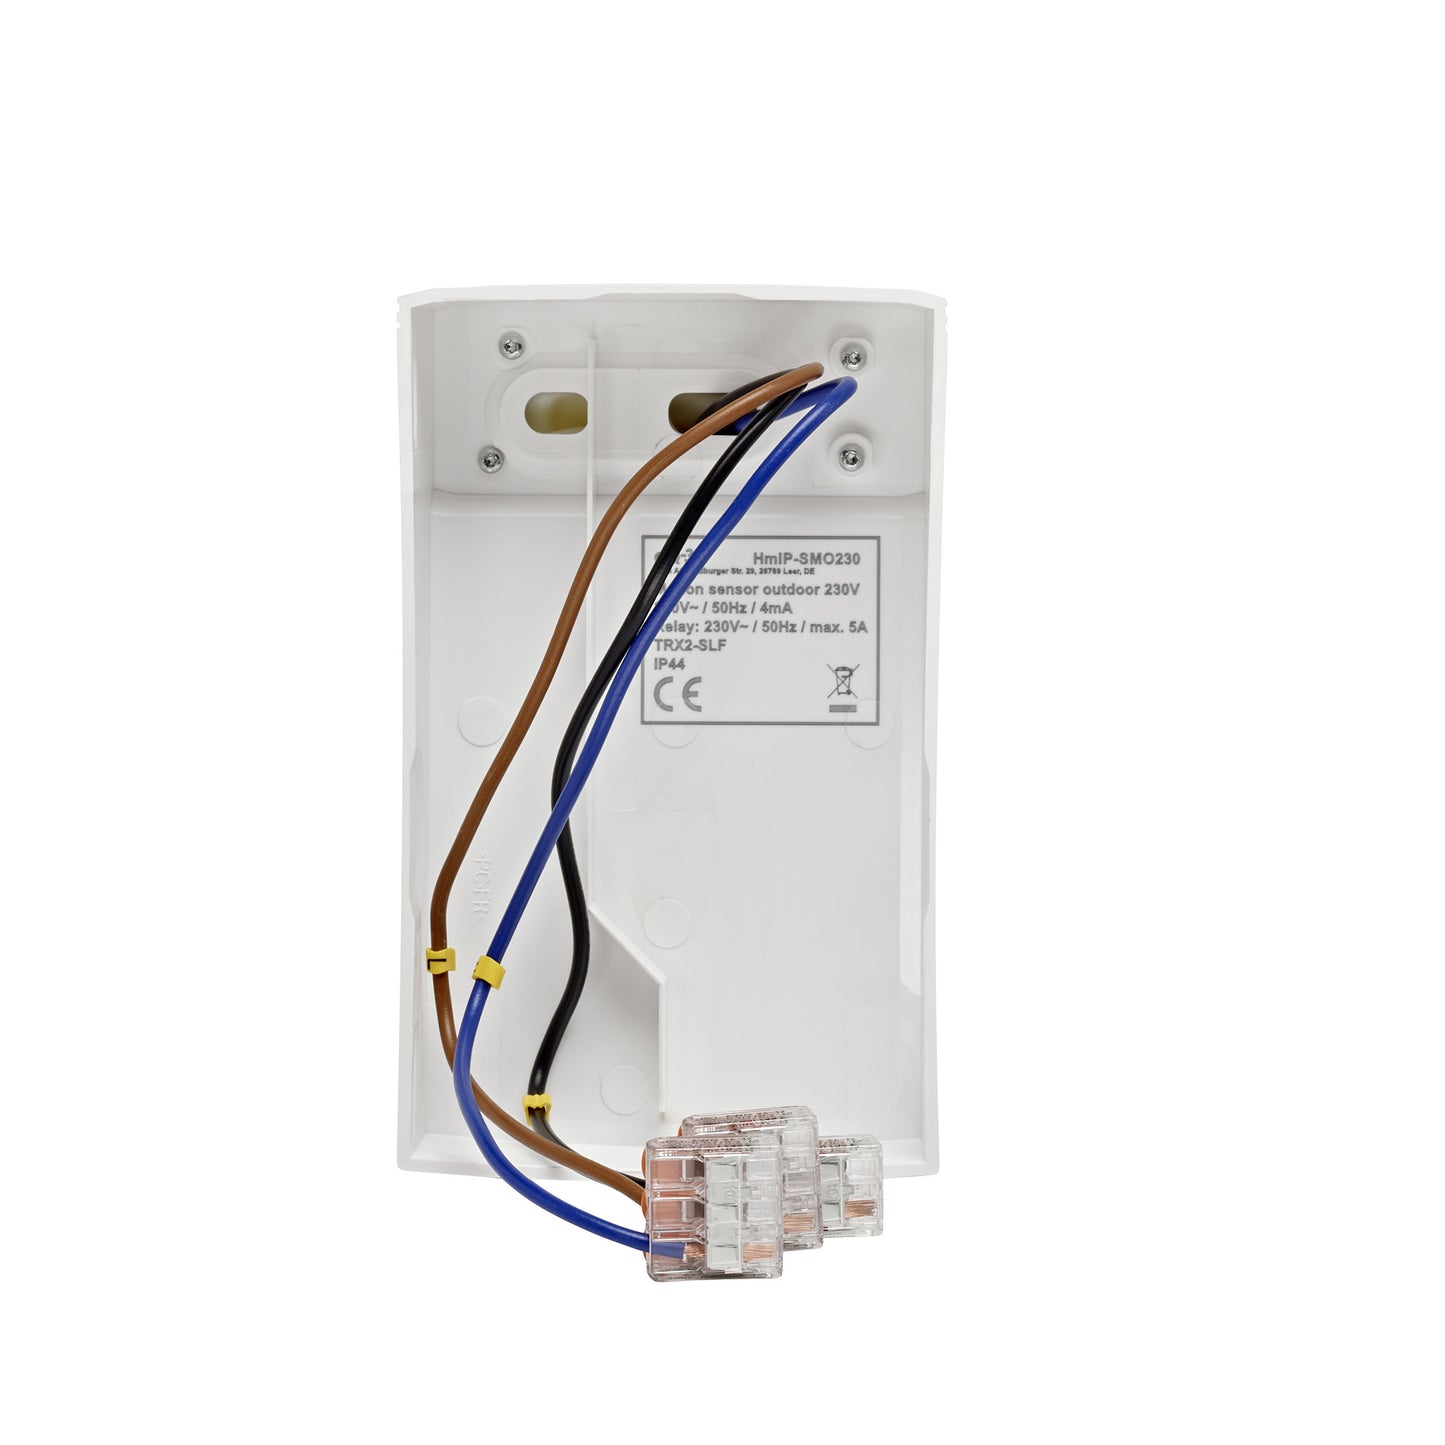 Homematic IP Smart Home Bewegungsmelder HmIP-SMO230 mit Schaltaktor - außen, 230 V, weiß